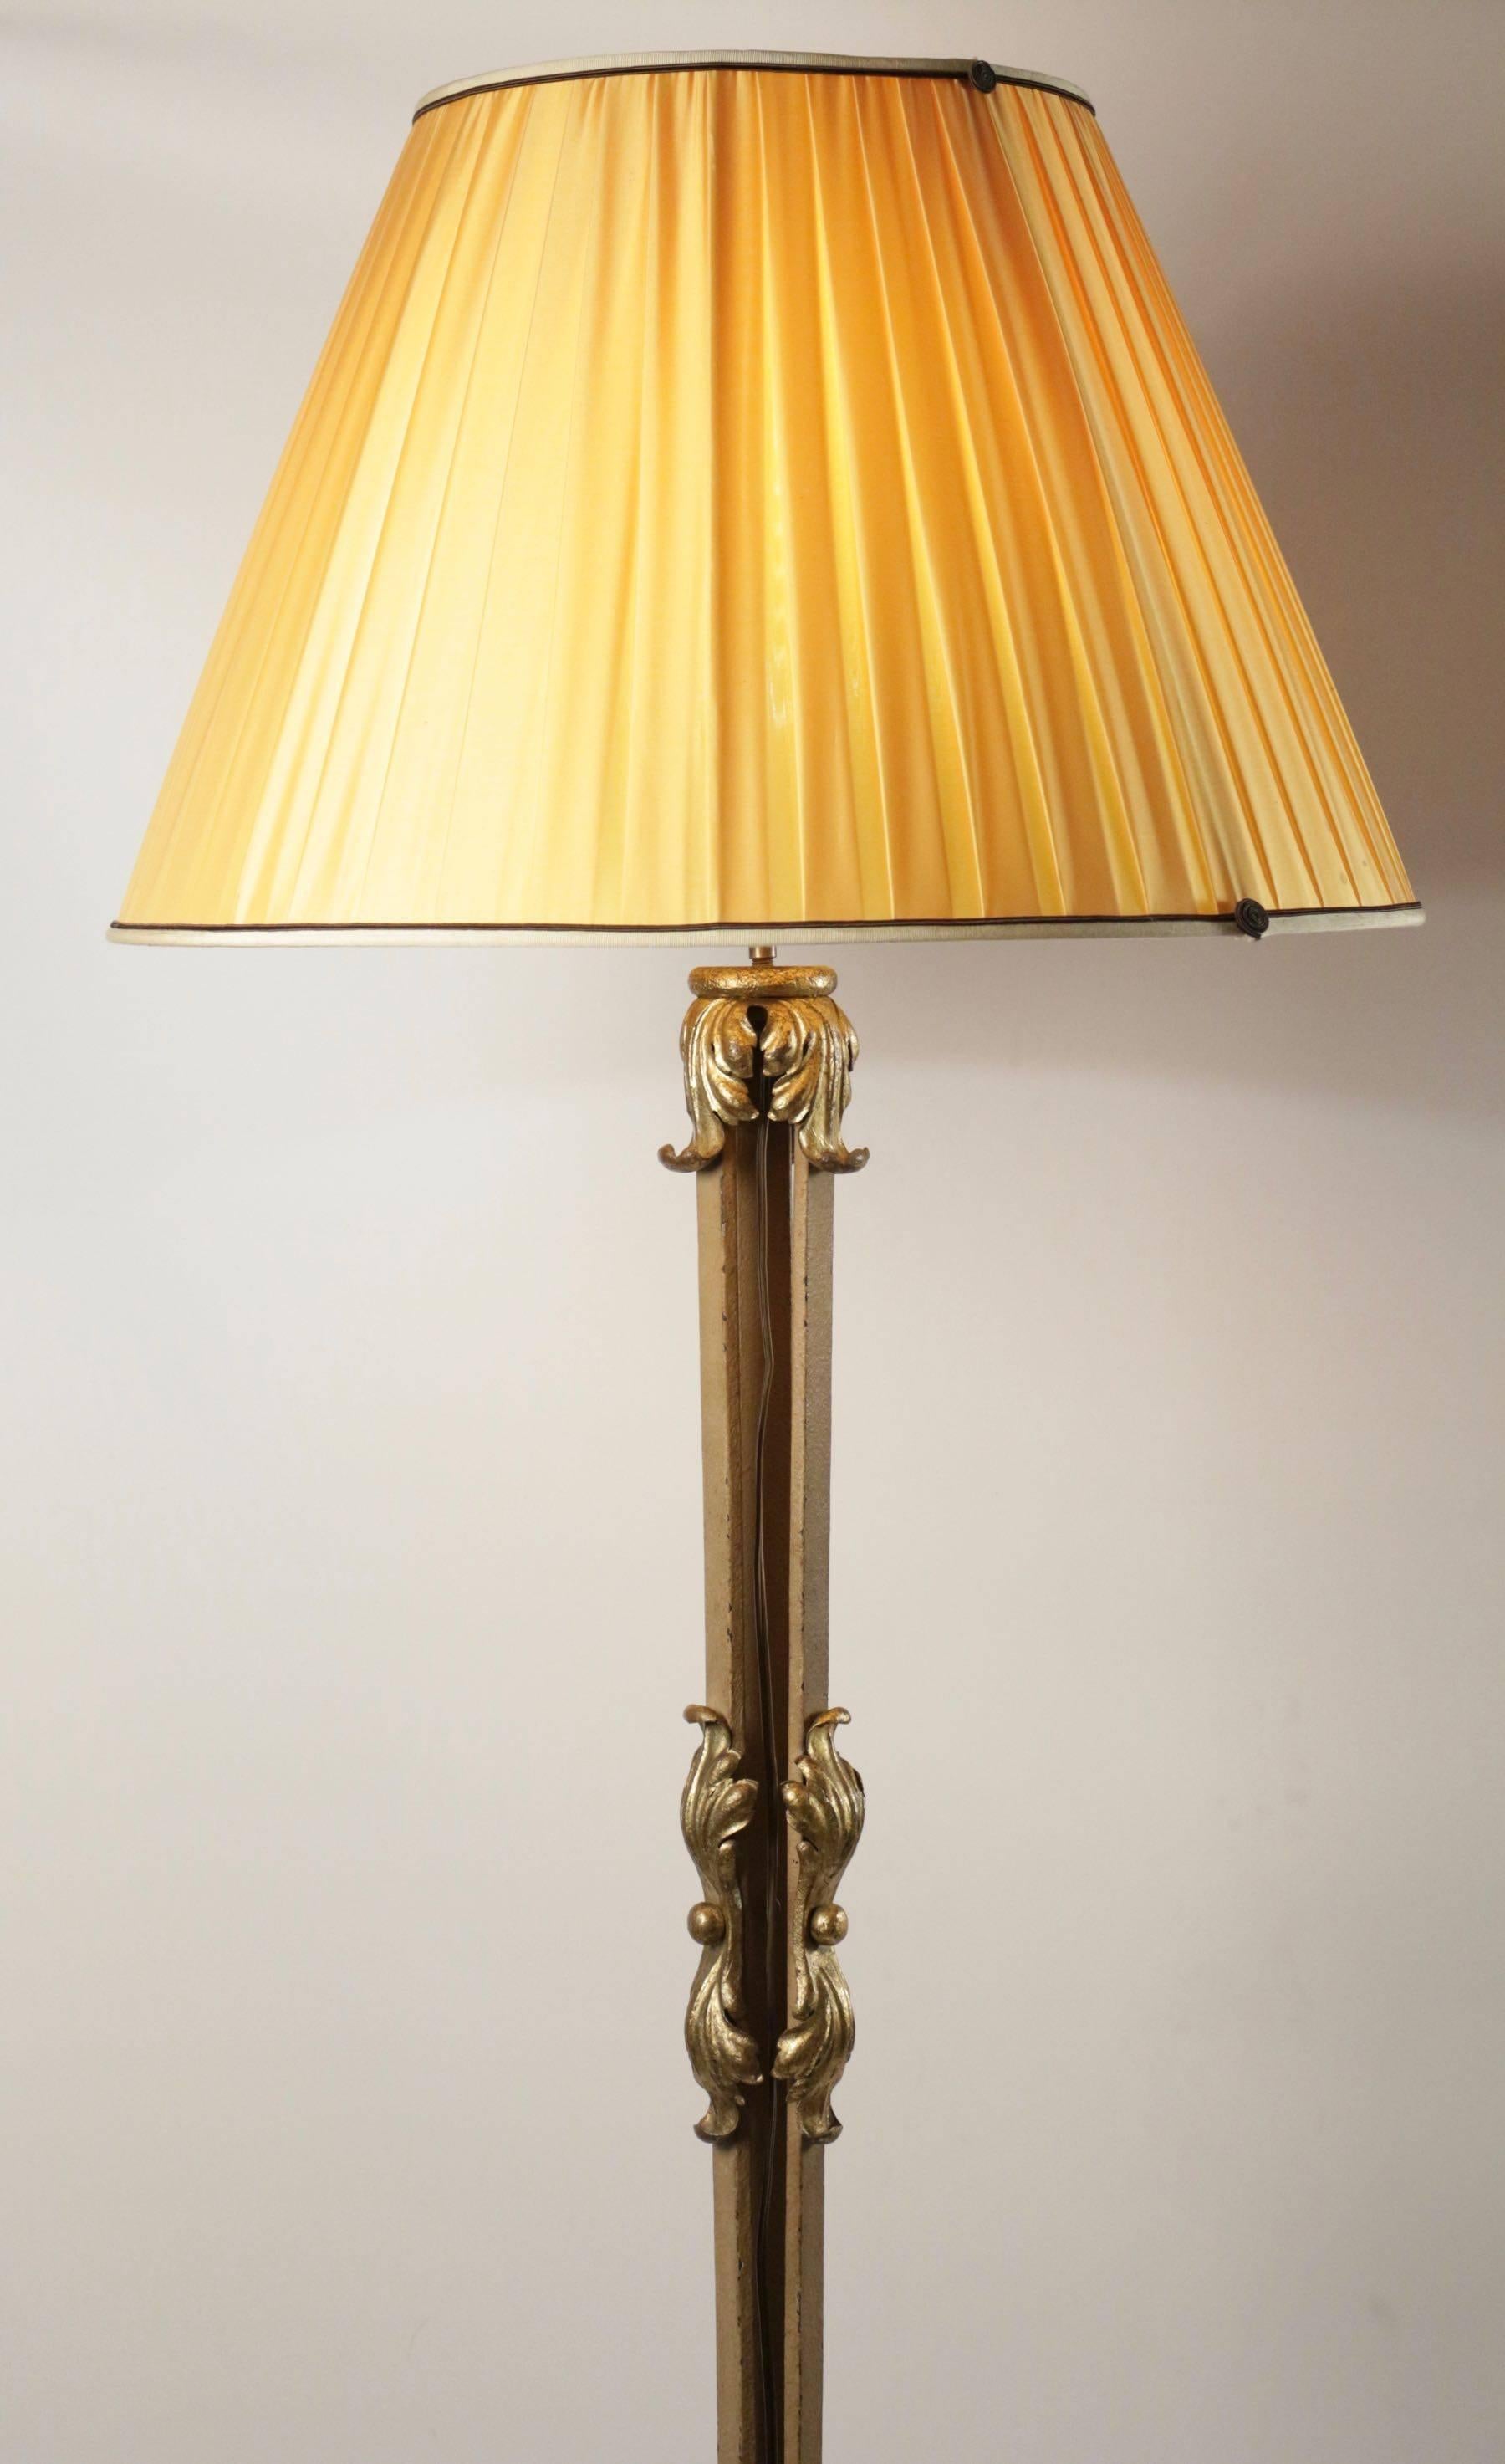 Belle lampe sur pied en fer forgé avec des accents dorés du début du 19e siècle.
 